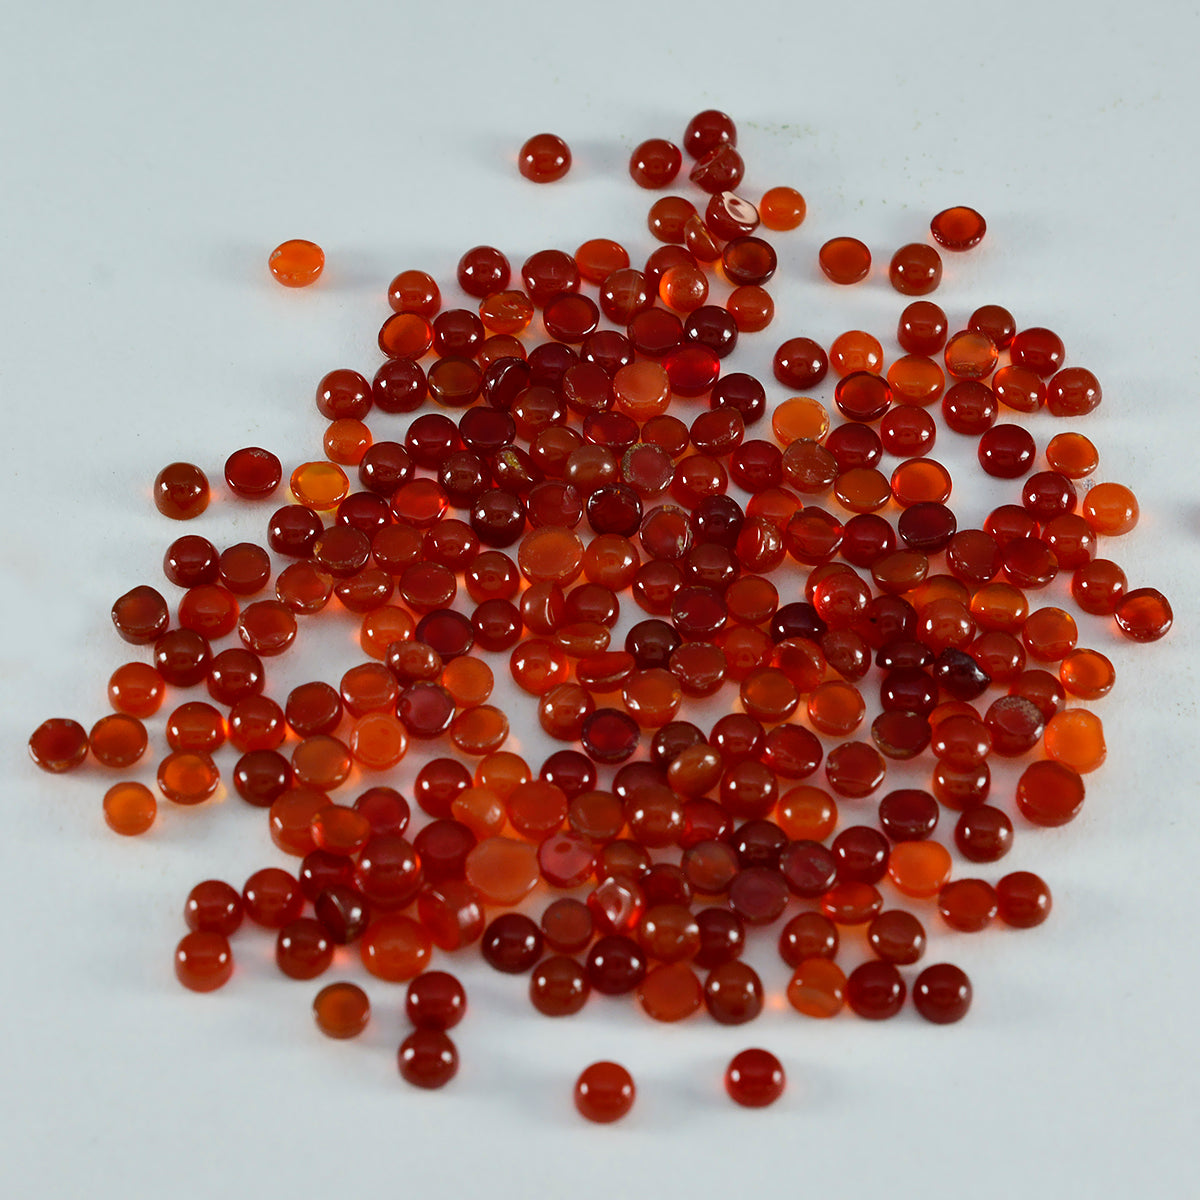 riyogems 1st röd onyx cabochon 3x3 mm rund form härlig kvalitet lösa ädelstenar